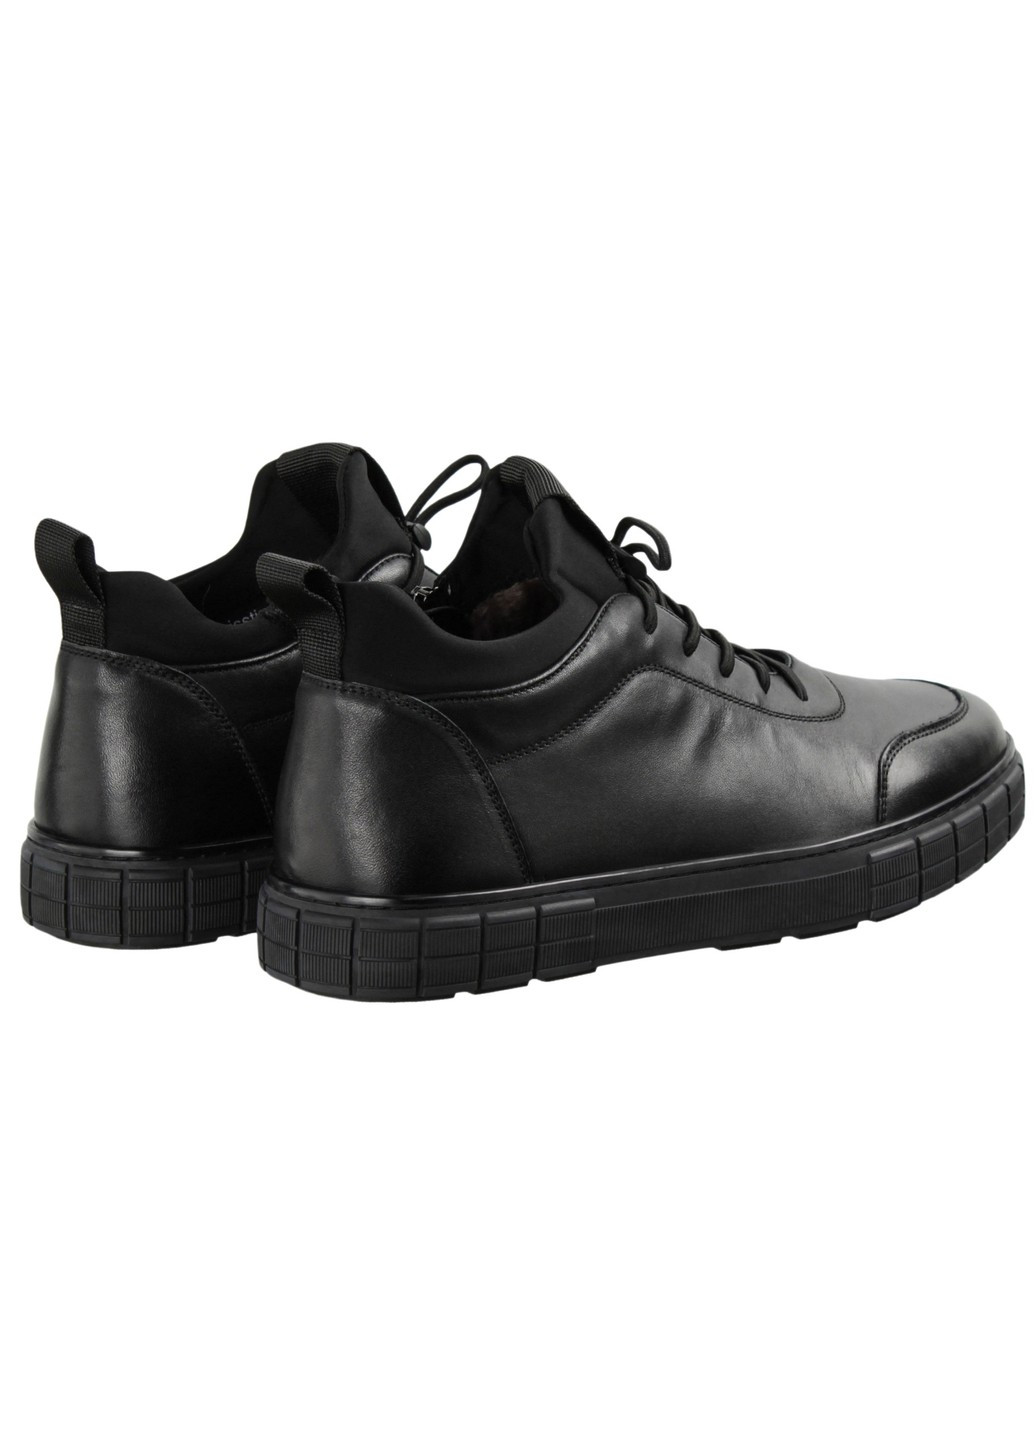 Черные зимние мужские ботинки 199807 Berisstini